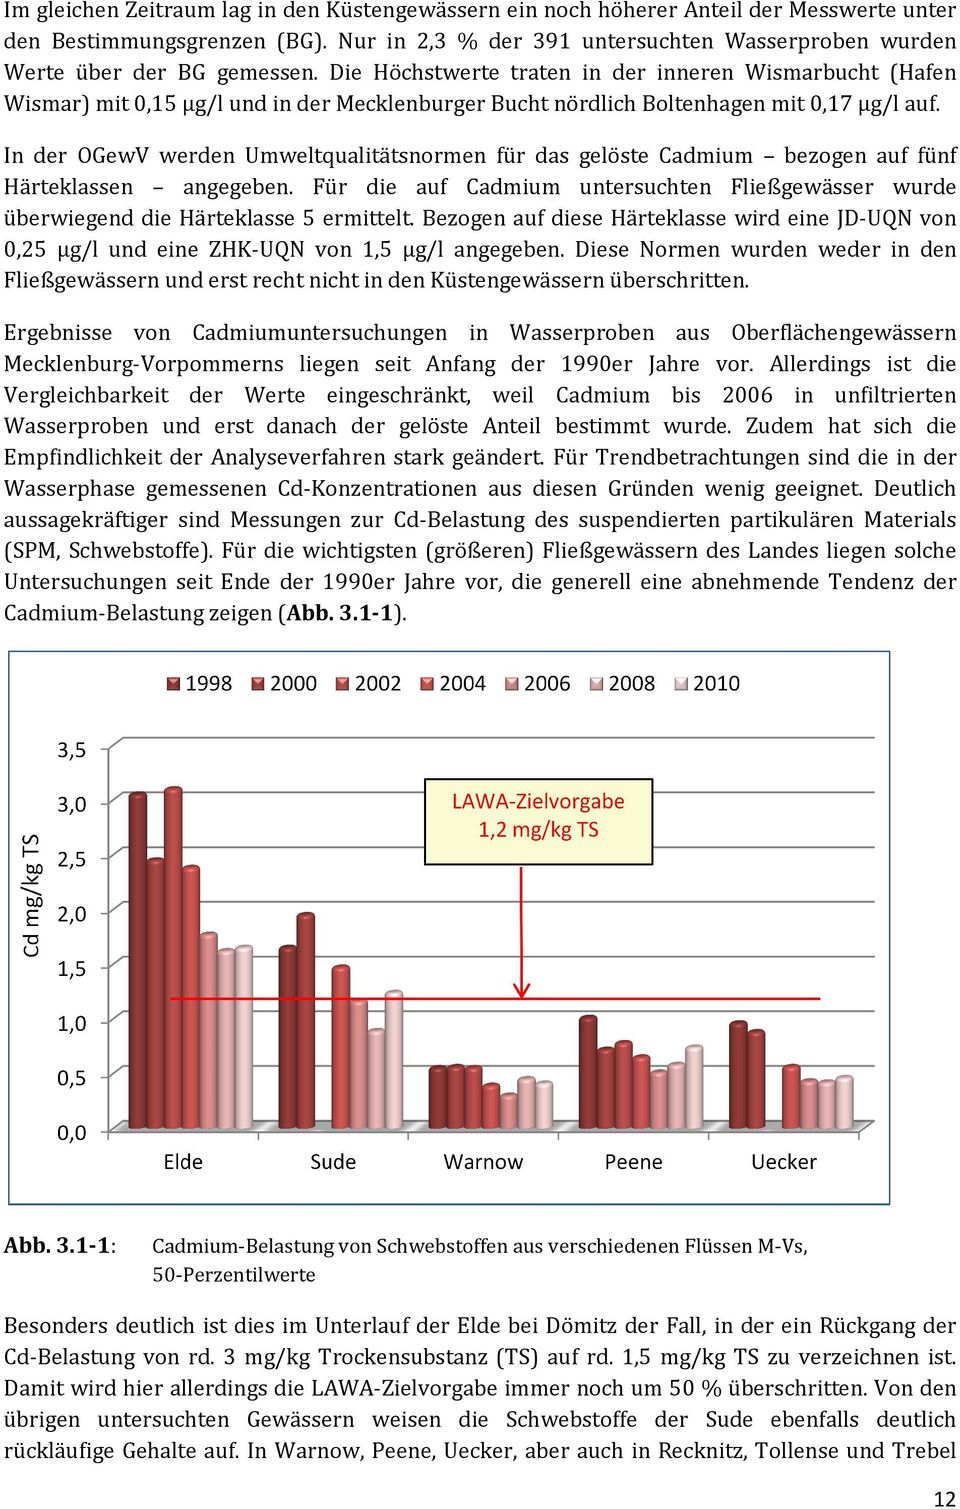 Die Höchstwerte traten in der inneren Wismarbucht (Hafen Wismar) mit 0,15 µg/l und in der de Mecklenburger Bucht nördlich Boltenhagen mit 0,17 µg/l auf.